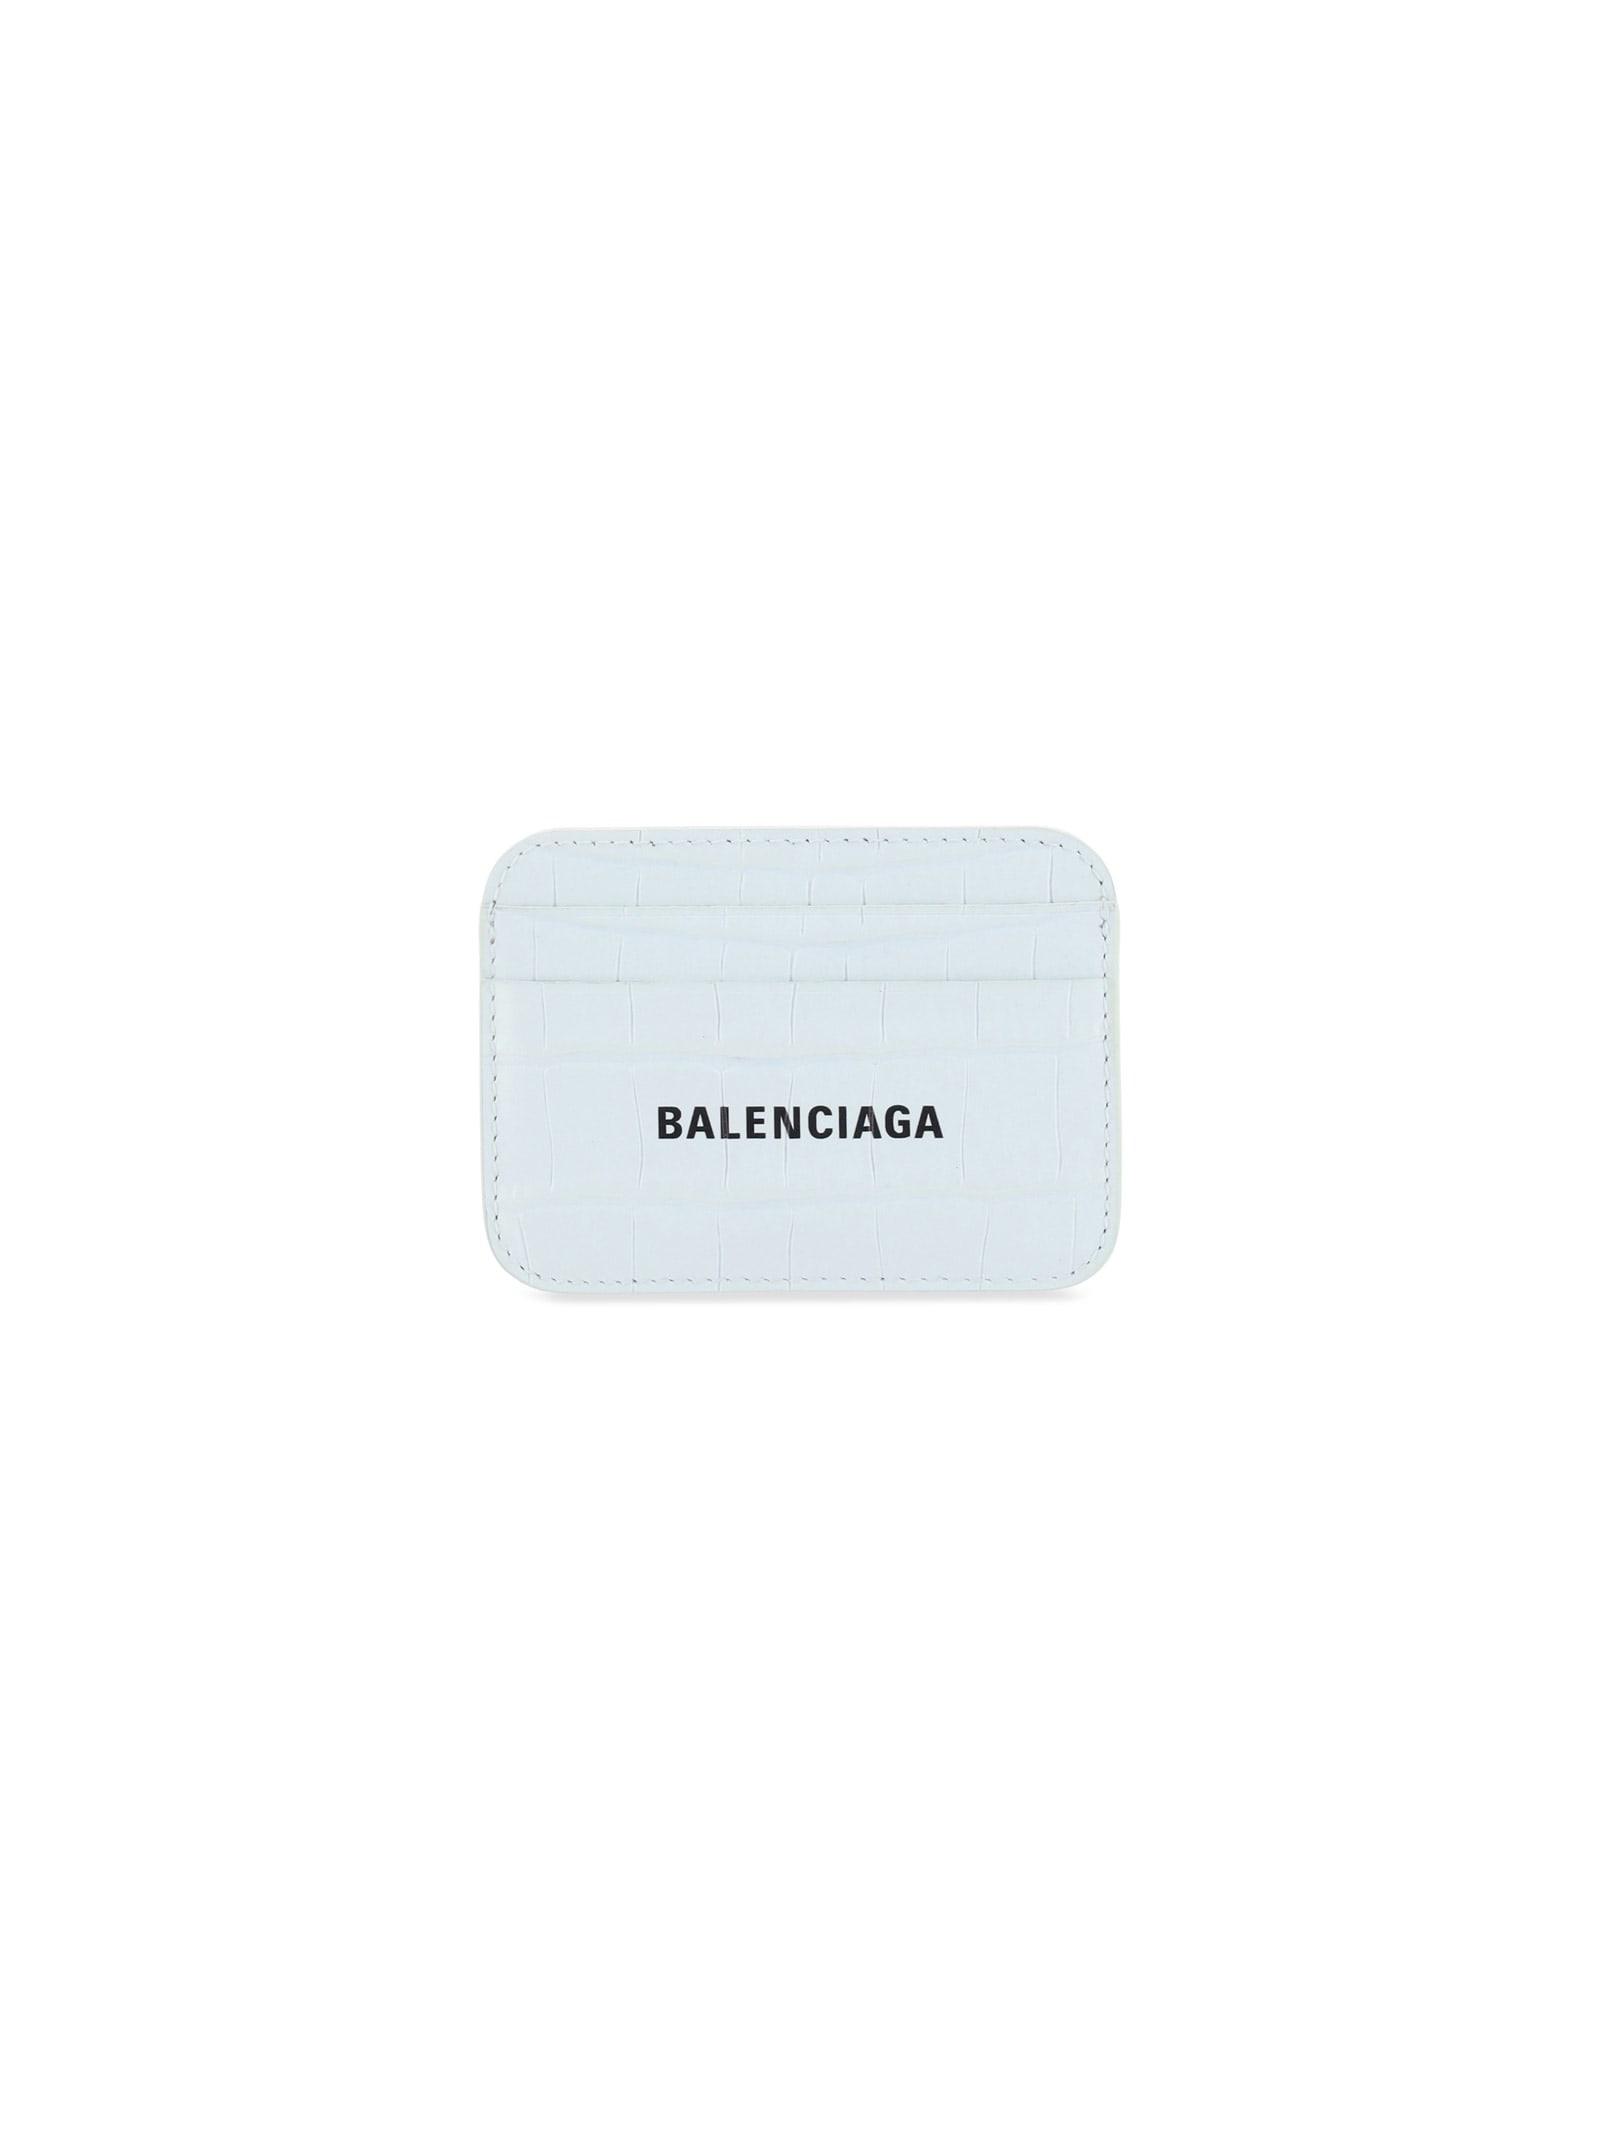 BALENCIAGA CARD HOLDER,11818109